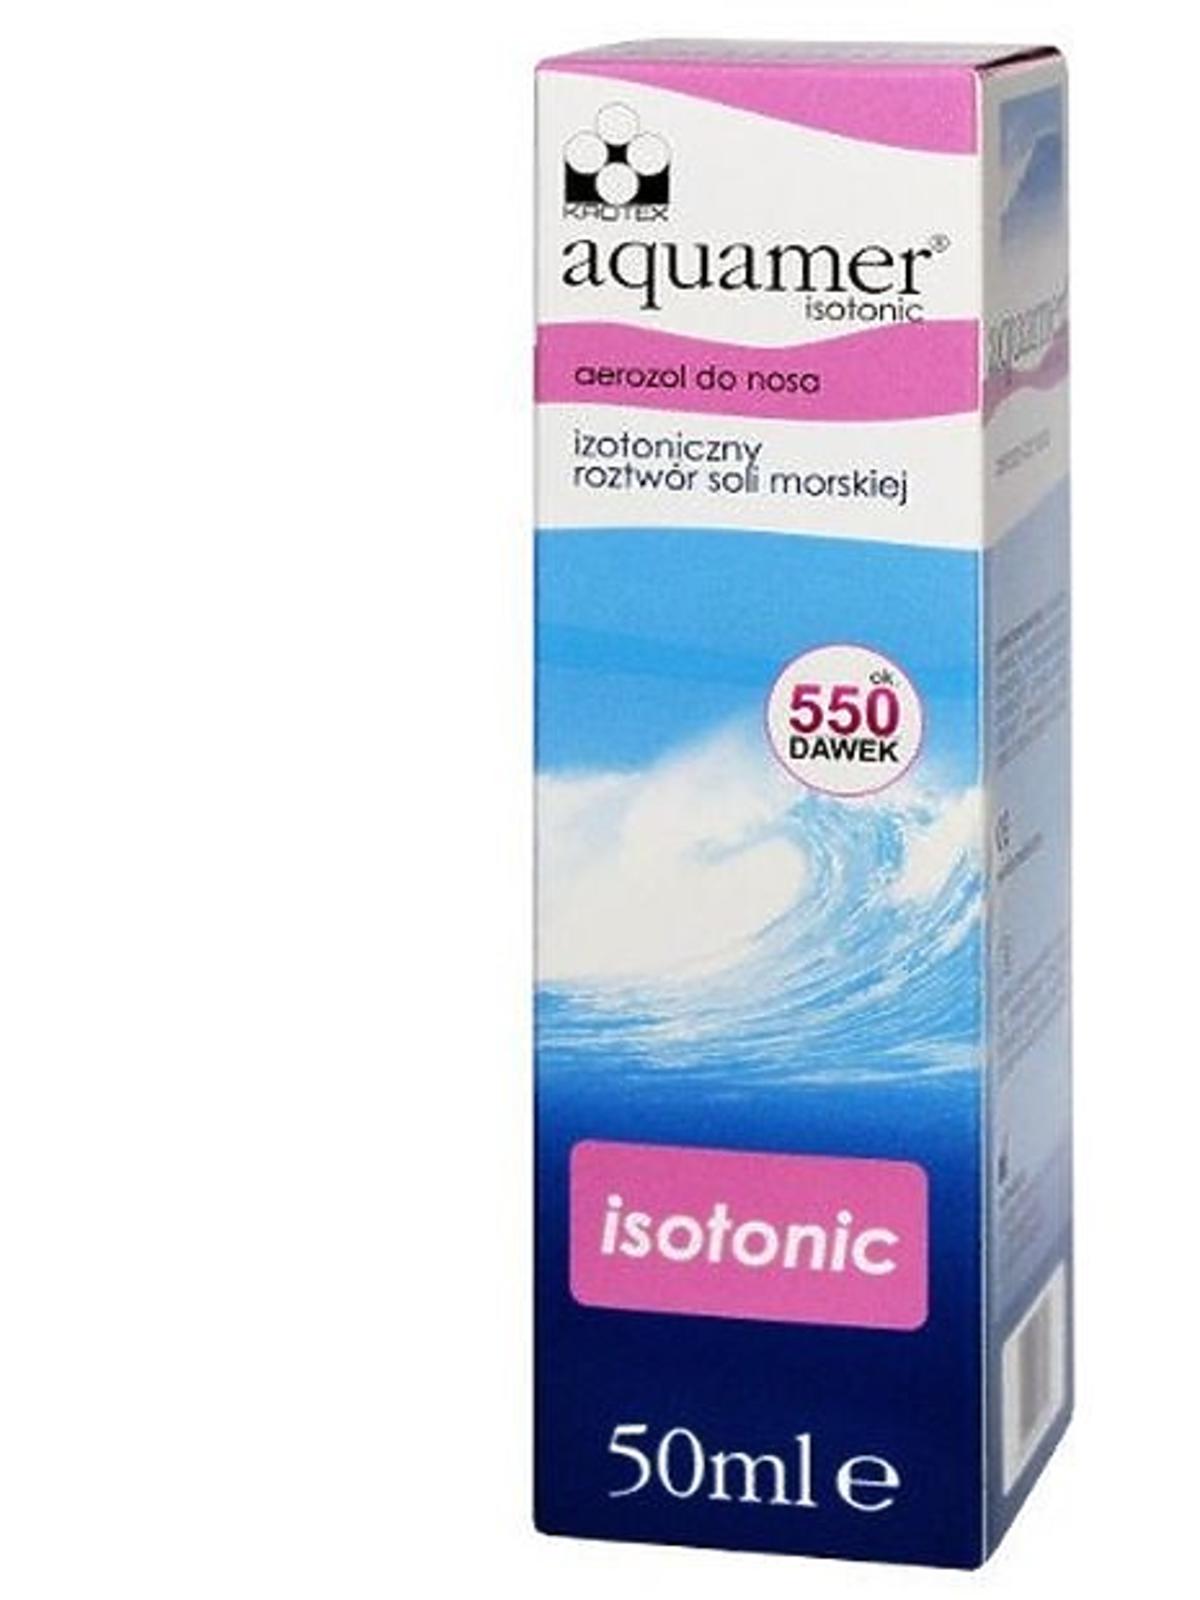 woda morska do nosa Aquamer Isotonic, Krotex, cena: ok. 12 zł